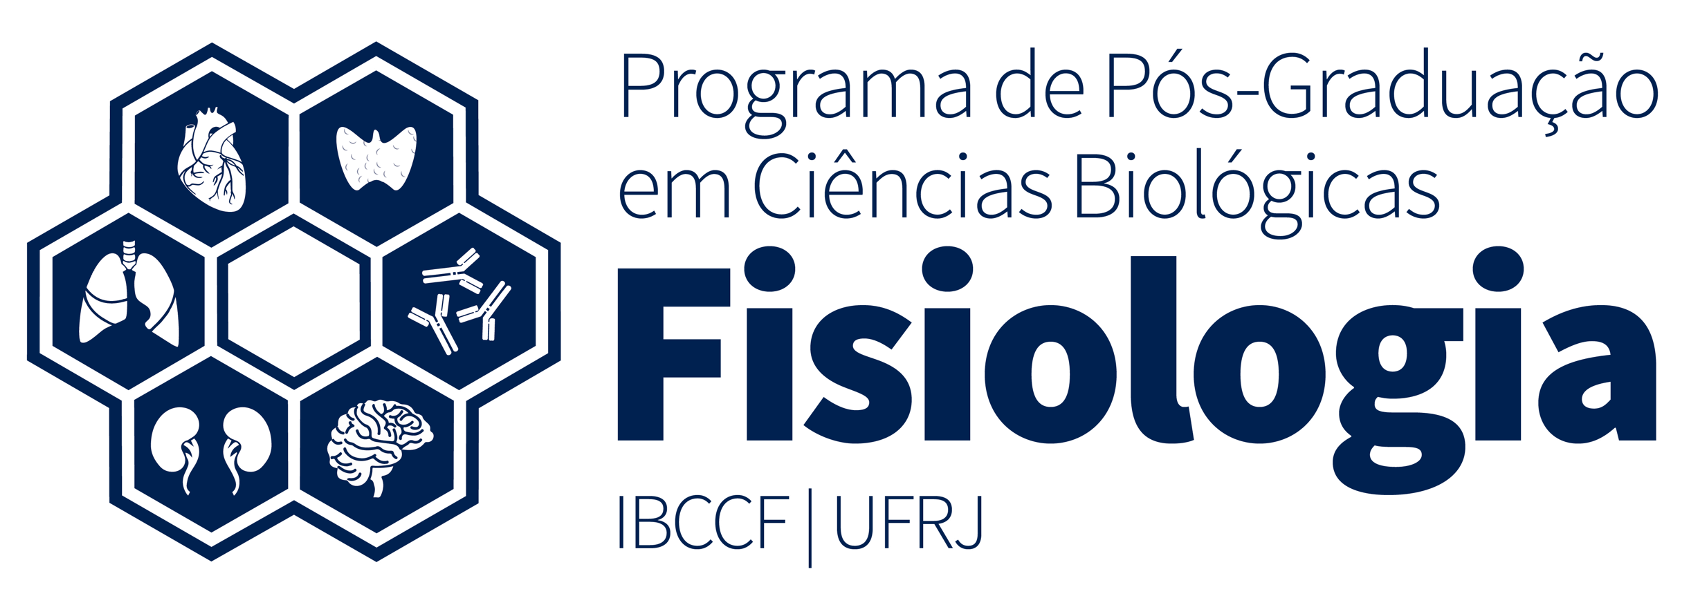 Luan - Rio de Janeiro,Rio de Janeiro: Sou formado em Ciências Biológicas  pela UFRJ e atualmente realizo Mestrado em Biofísica (UFRJ). Tenho  expertise e experiência para ensinar: biologia, química, física e inglês!